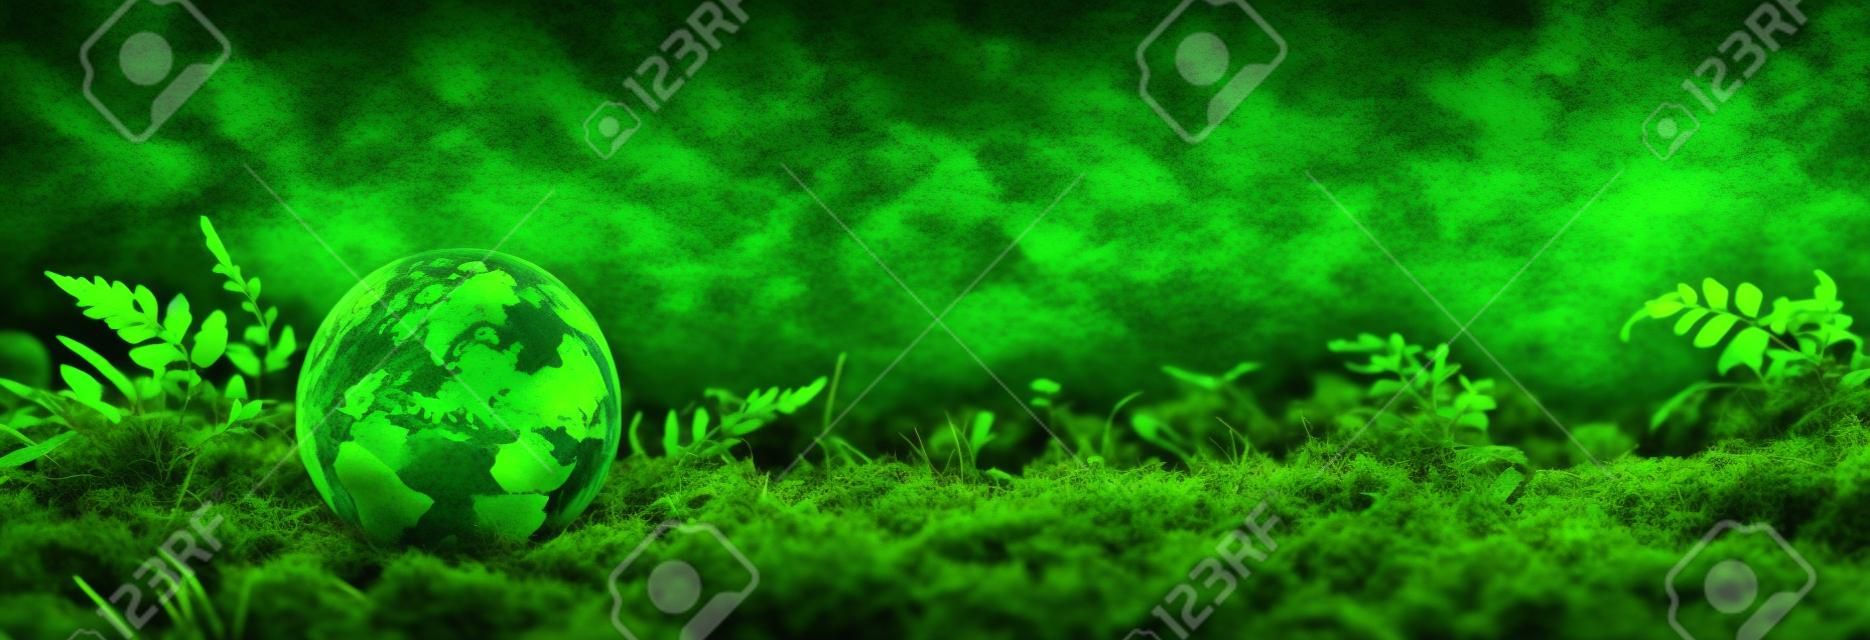 Globo verde de musgo - Concepto ambiental